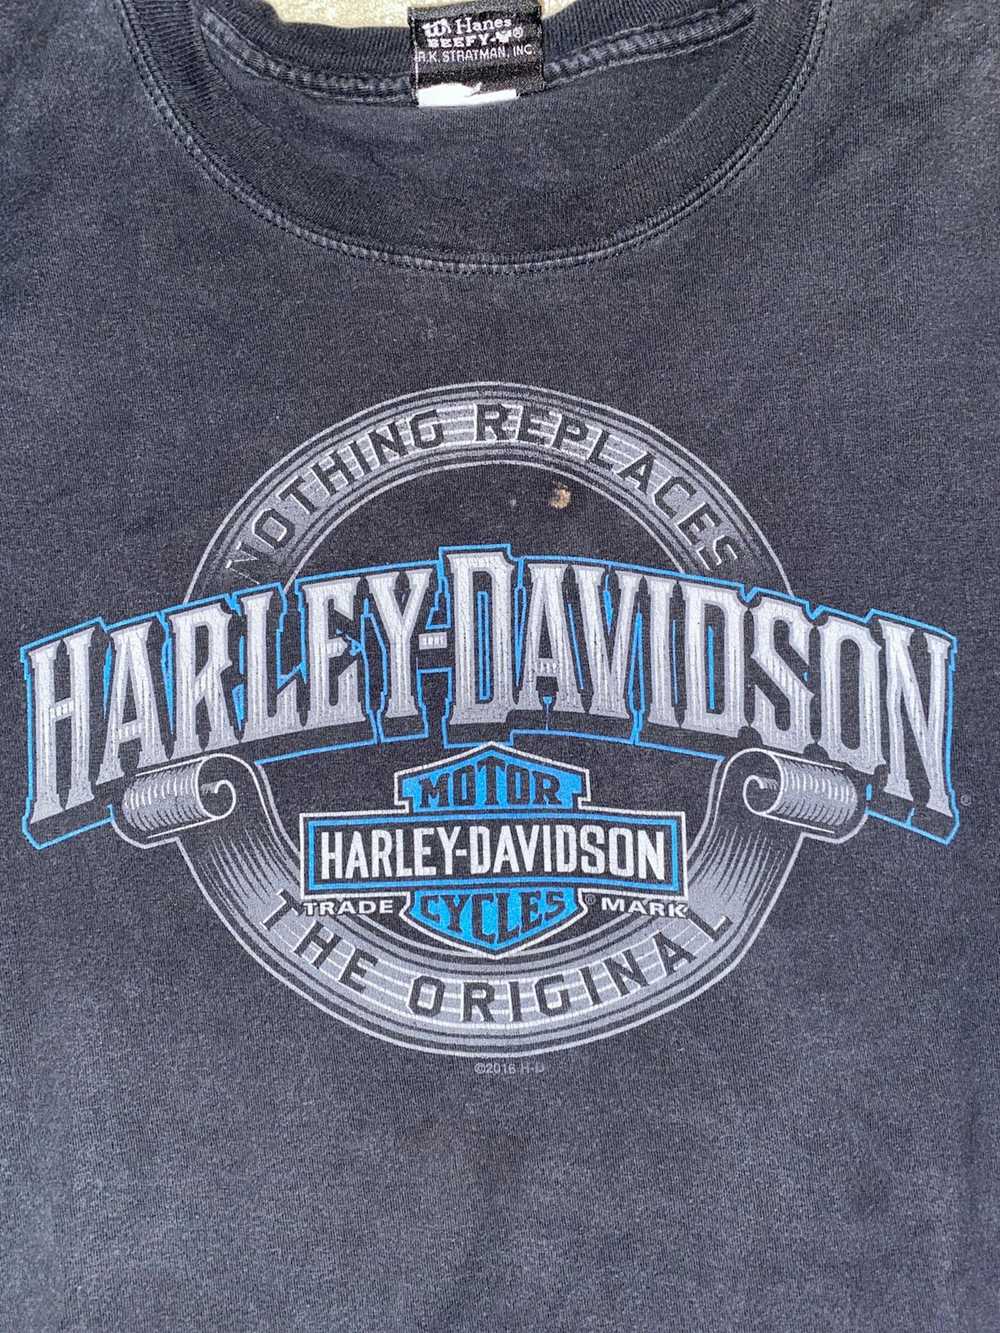 Harley Davidson Vintage Harley Davidson - image 2